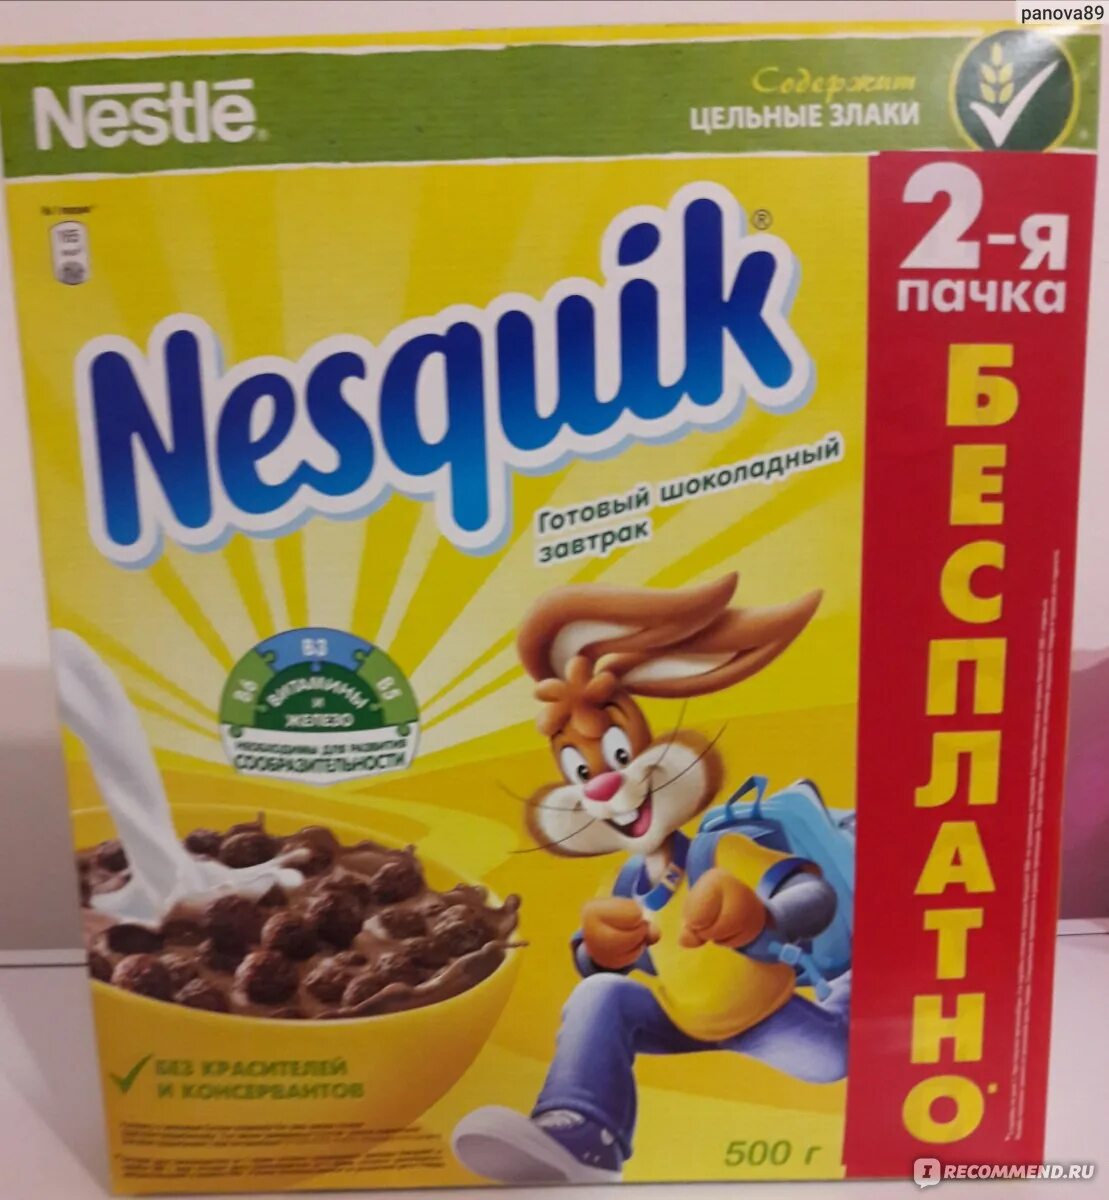 Купить несквик шарики. Готовые Завтраки Несквик дуо 250 г. Готовый завтрак Nestle Nesquik (250гр). Готовый завтрак Nestle Nesquik (130gr). Несквик хлопья 250.